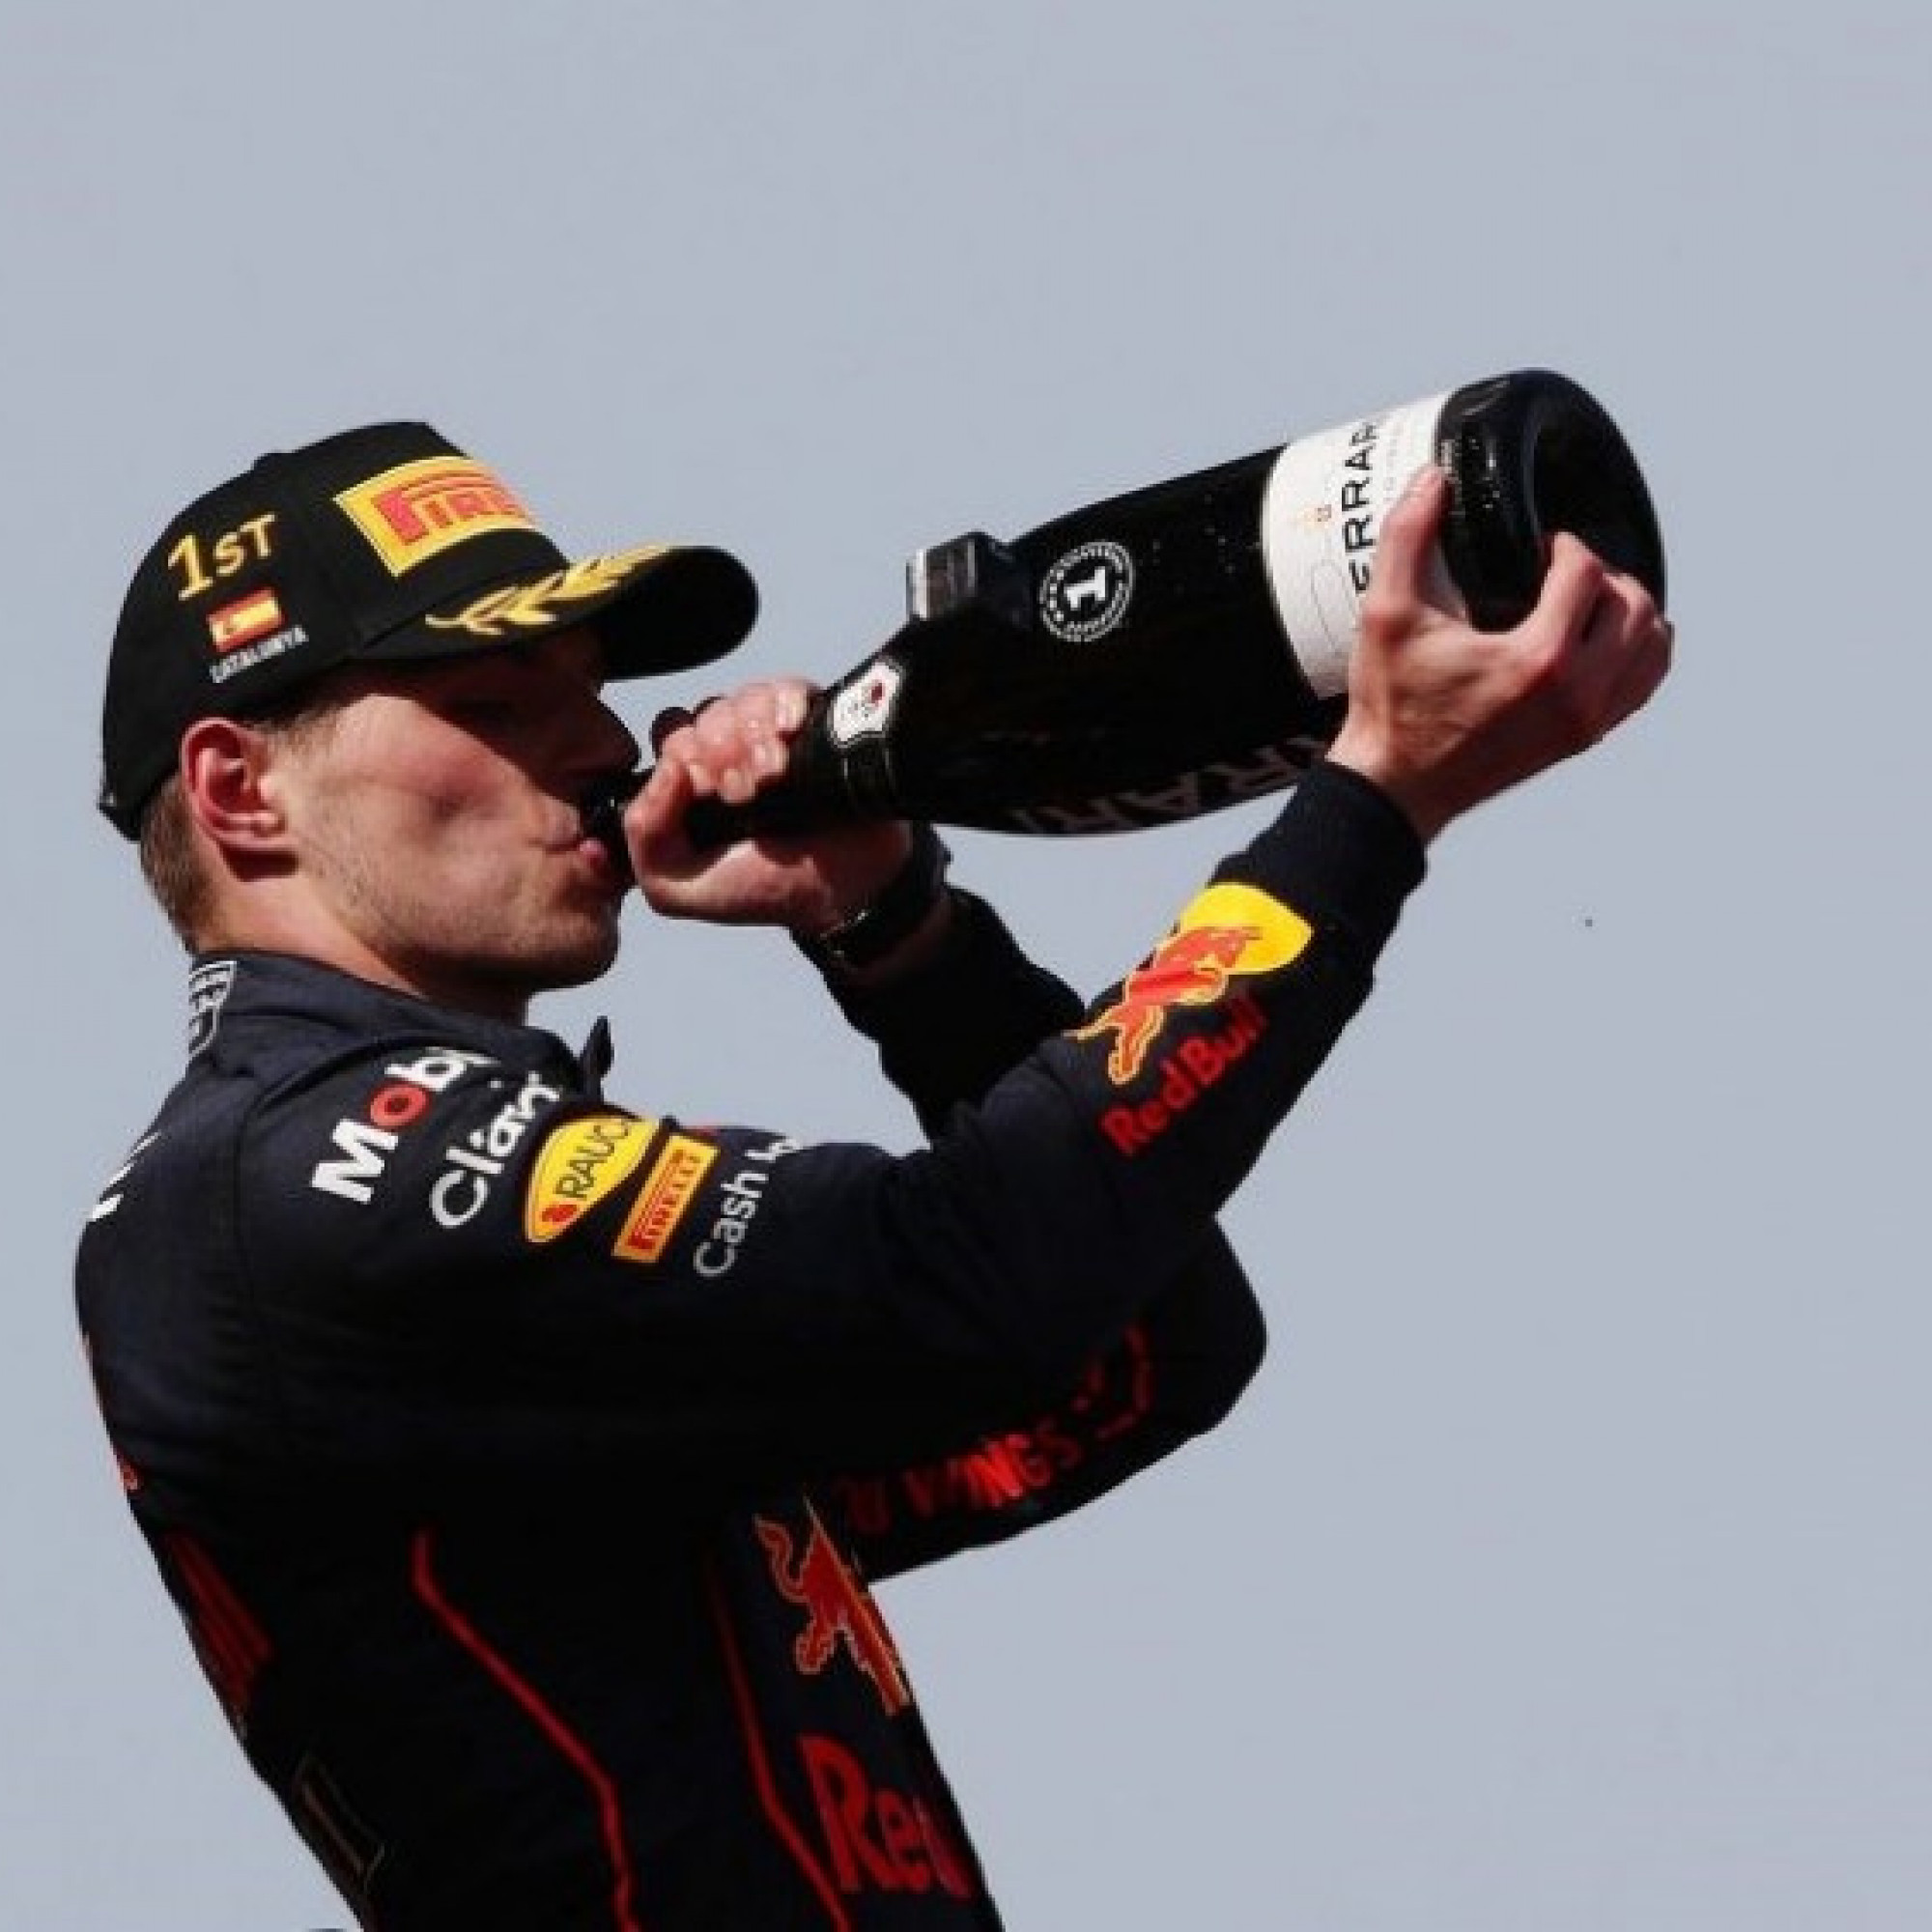  - Đua xe F1, Spanish GP: Bước ngoặt trong cuộc chiến danh hiệu với chiến thắng 1-2 của Red Bull